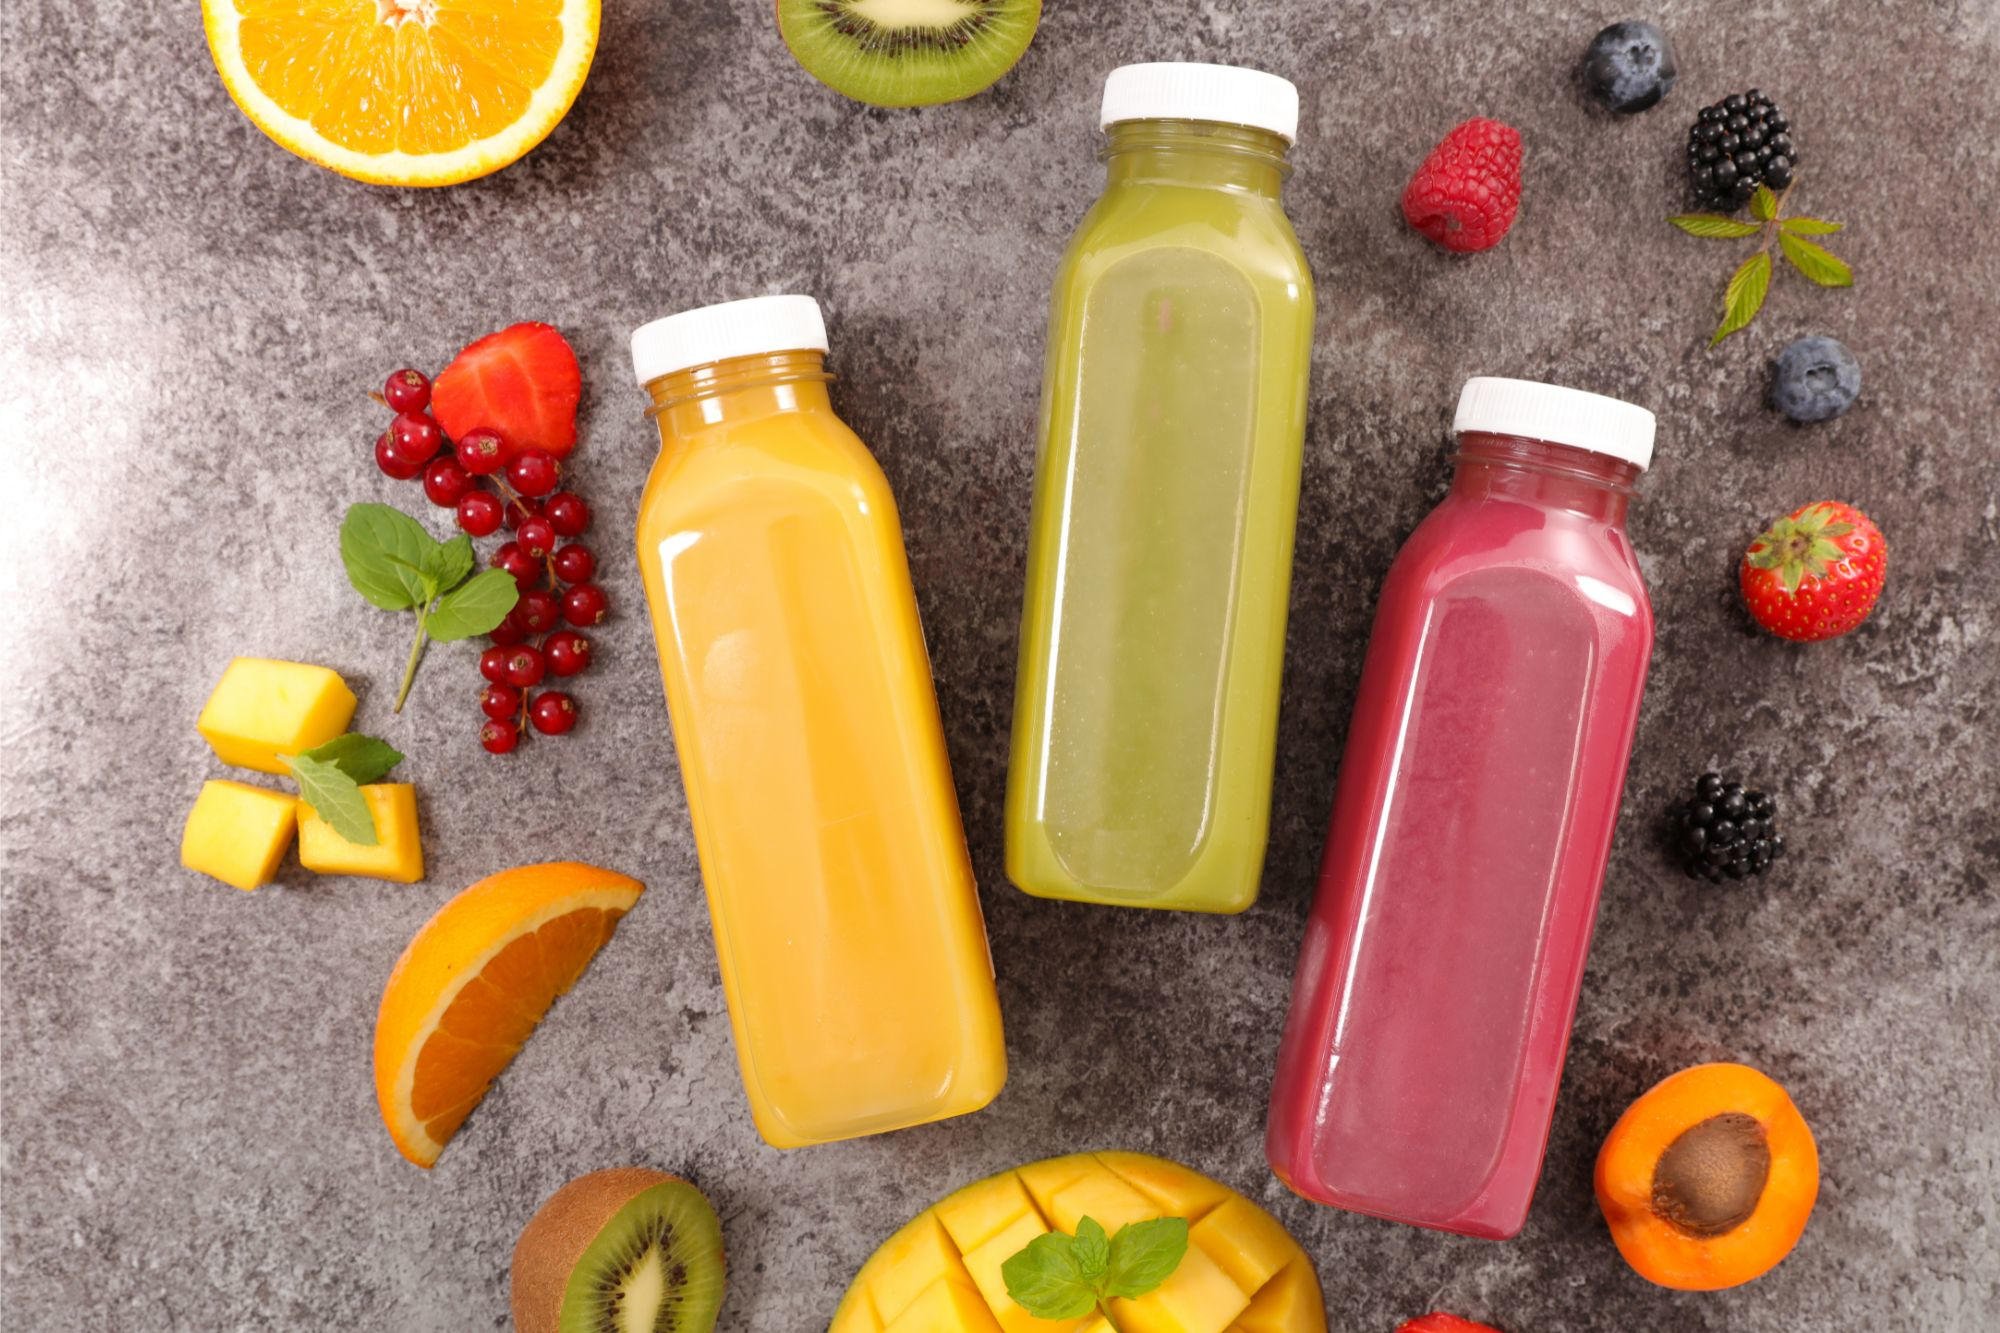 Gli scienziati hanno scoperto livelli elevati di metalli tossici nei succhi di frutta e nelle bevande analcoliche